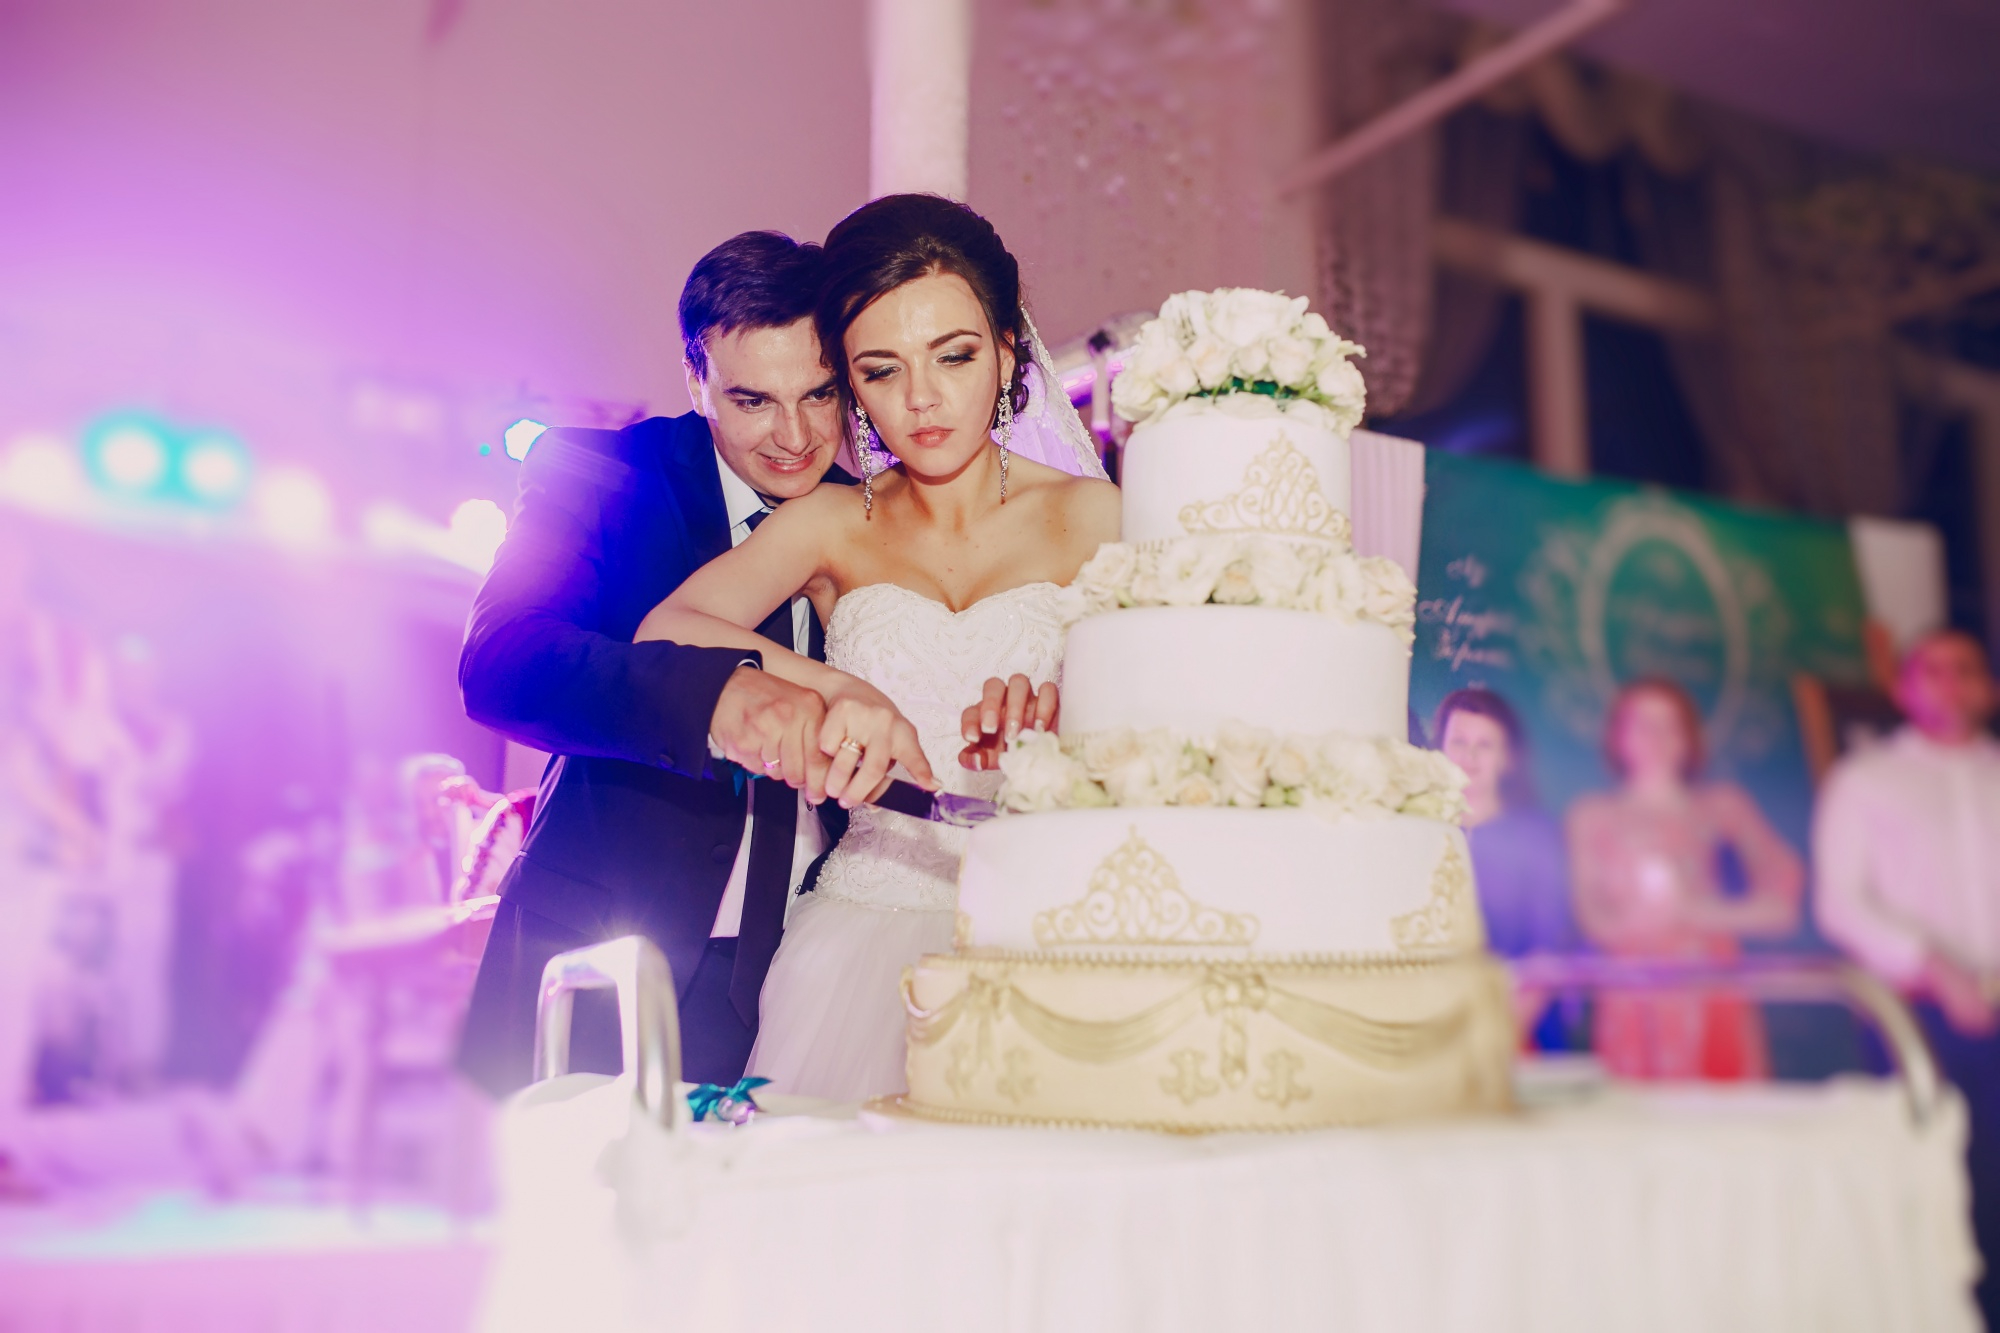 Une mariée et un marié coupant leur gâteau de mariage | Source : freepik